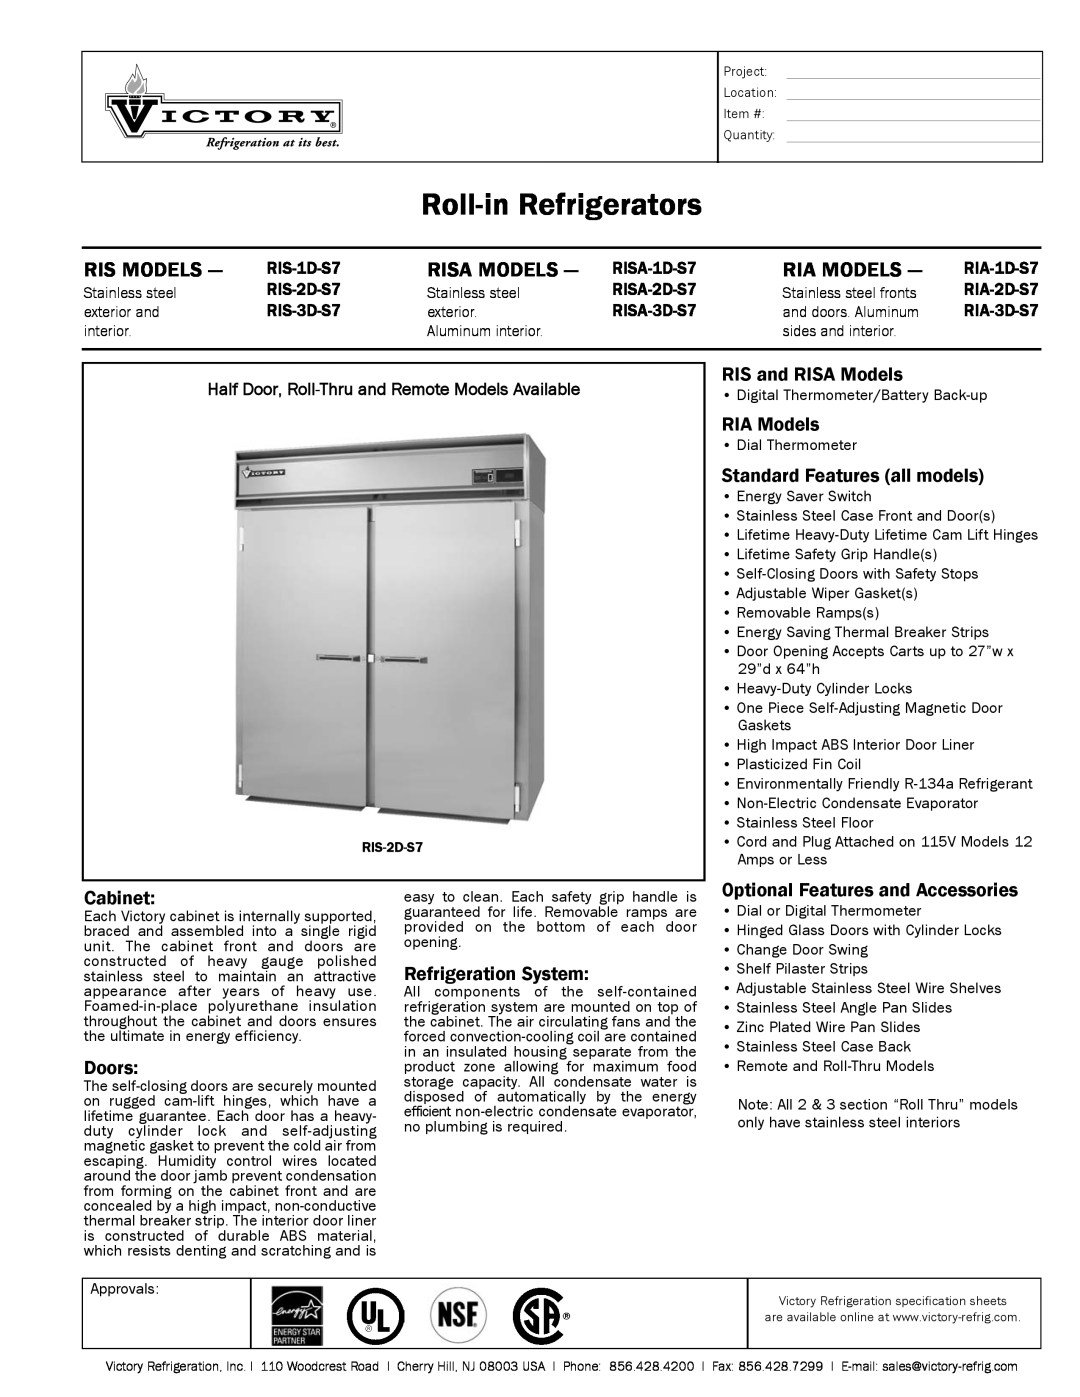 Victory Refrigeration RIA-2D-S7 specifications Roll-inRefrigerators, Ris Models, Risa Models, Ria Models, RIA Models 